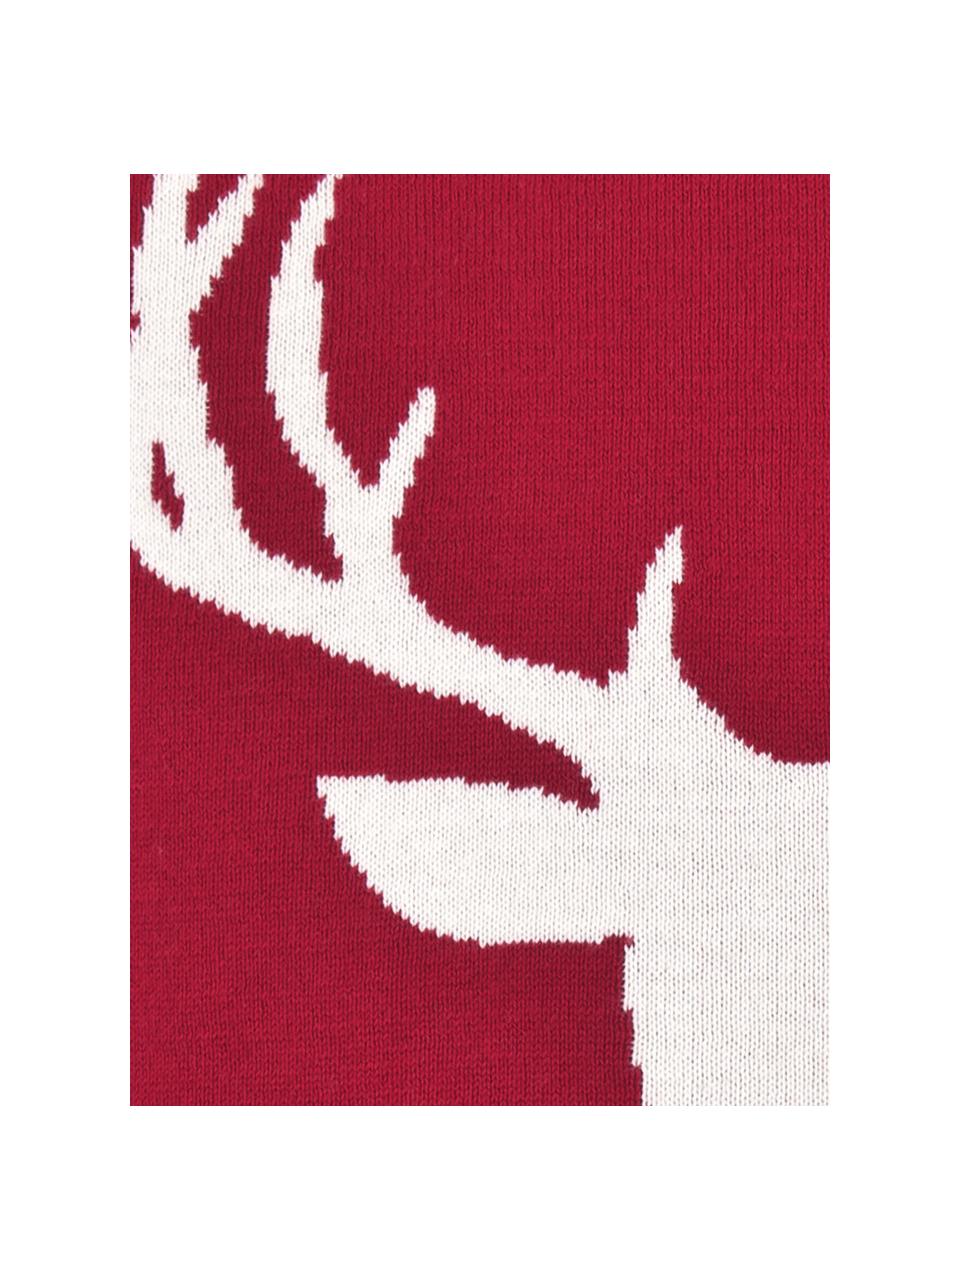 Strick-Kissenhülle Anders mit Hirschmotiv und Bommeln, Baumwolle, Rot, Cremeweiß, B 40 x L 40 cm